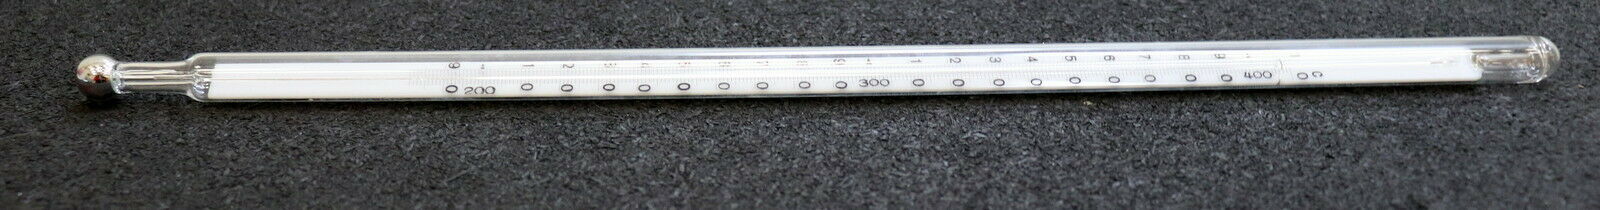 JÜRGENS Flammpunkt Thermometer nach MARCUSSON Flammpunktprüfer 0-400°C M410